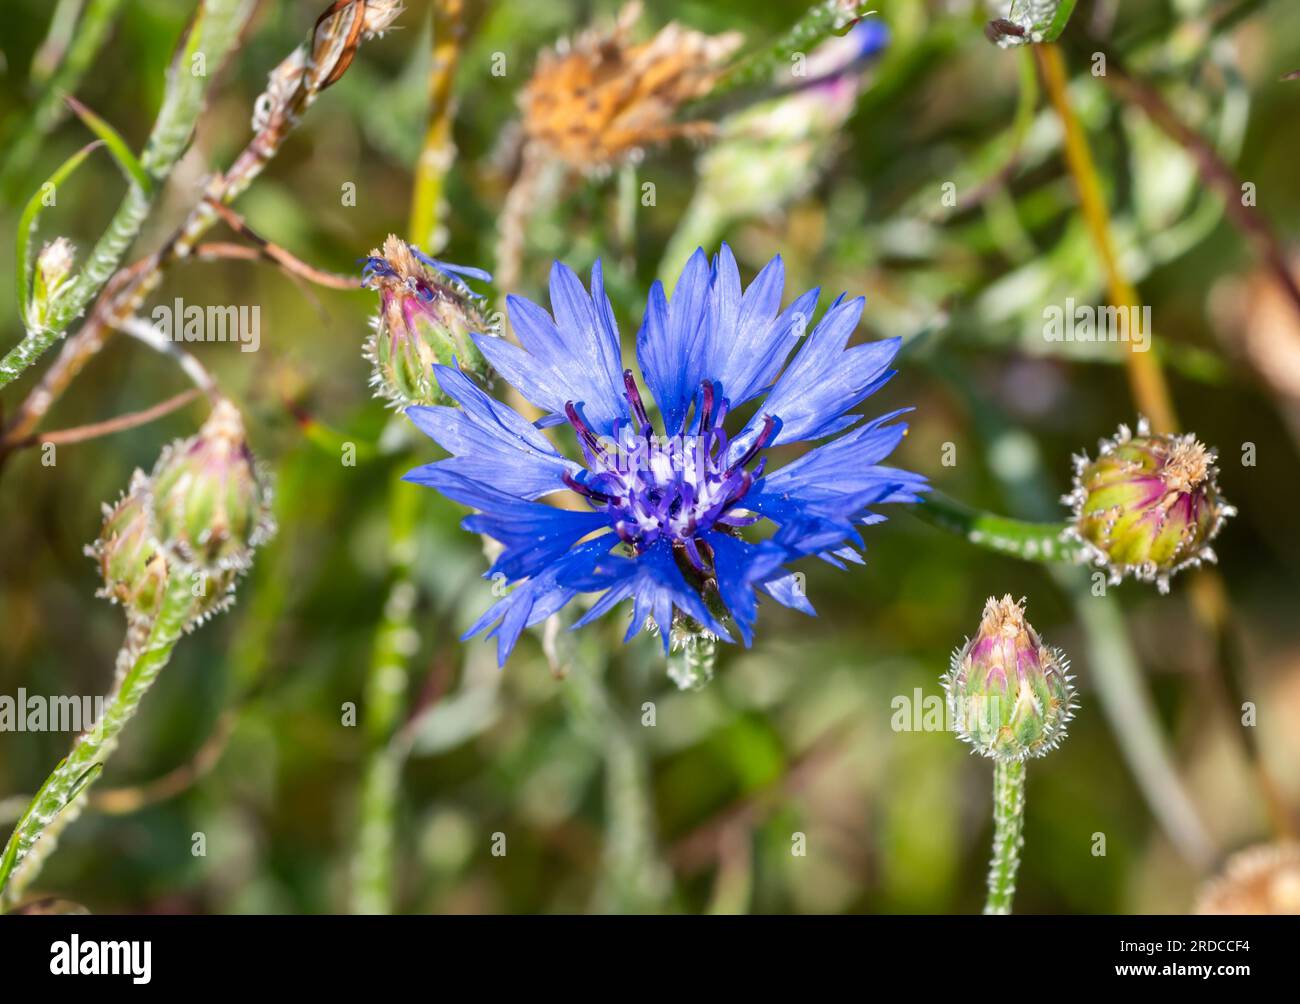 Nahaufnahme einer einzelnen Cornflower, auch bekannt als Bachelor's Button (Centaurea cyanus oder Cyanus segetum), einer blauen Blume aus der Familie Asteraceae im Sommer, England, Großbritannien. Stockfoto